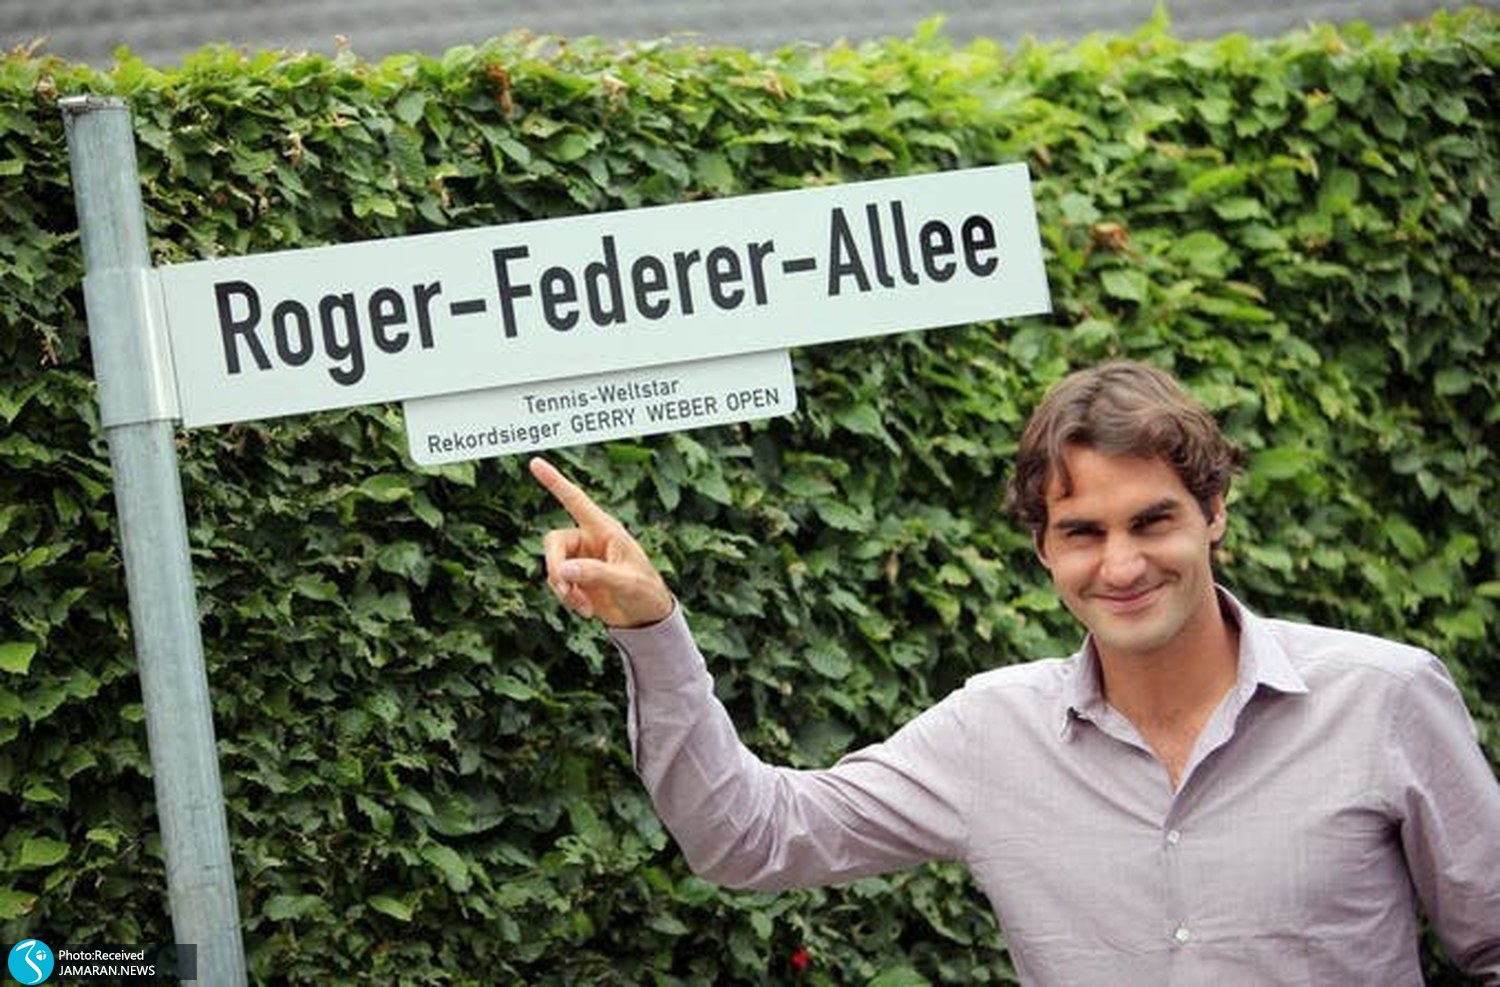 خداحافظی باشکوه راجر فدرر از دنیای تنیس 